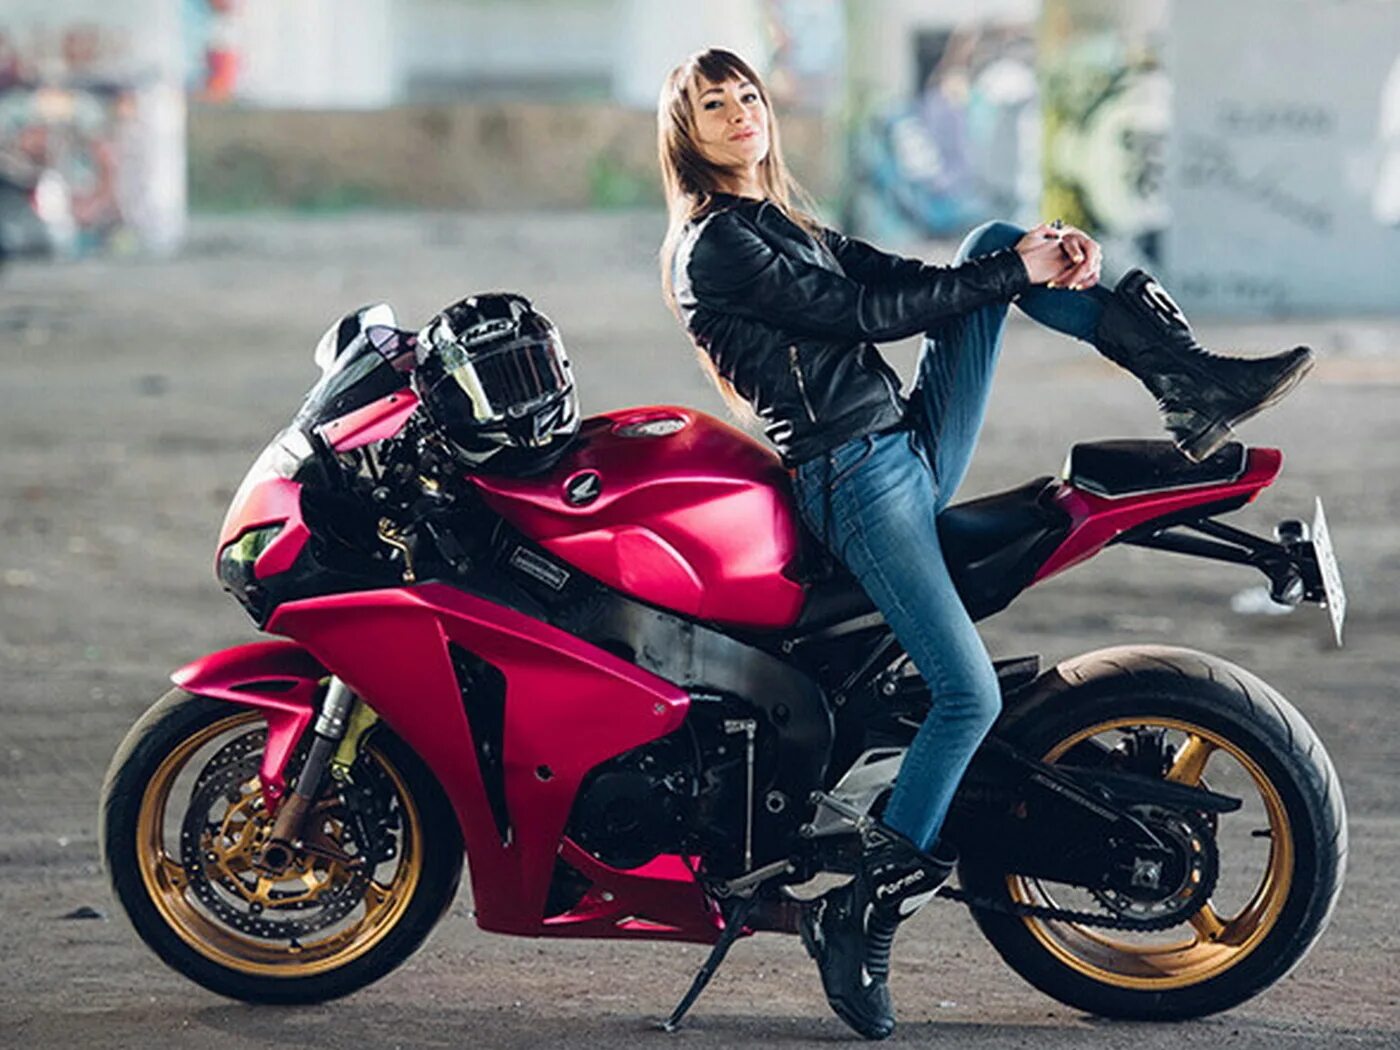 Девушка на мотоцикле. Красивые девушки на мотоциклах. Леди на мотоцикле. Девушка на мотоцикле в шлеме. Про девушку на мотоцикле